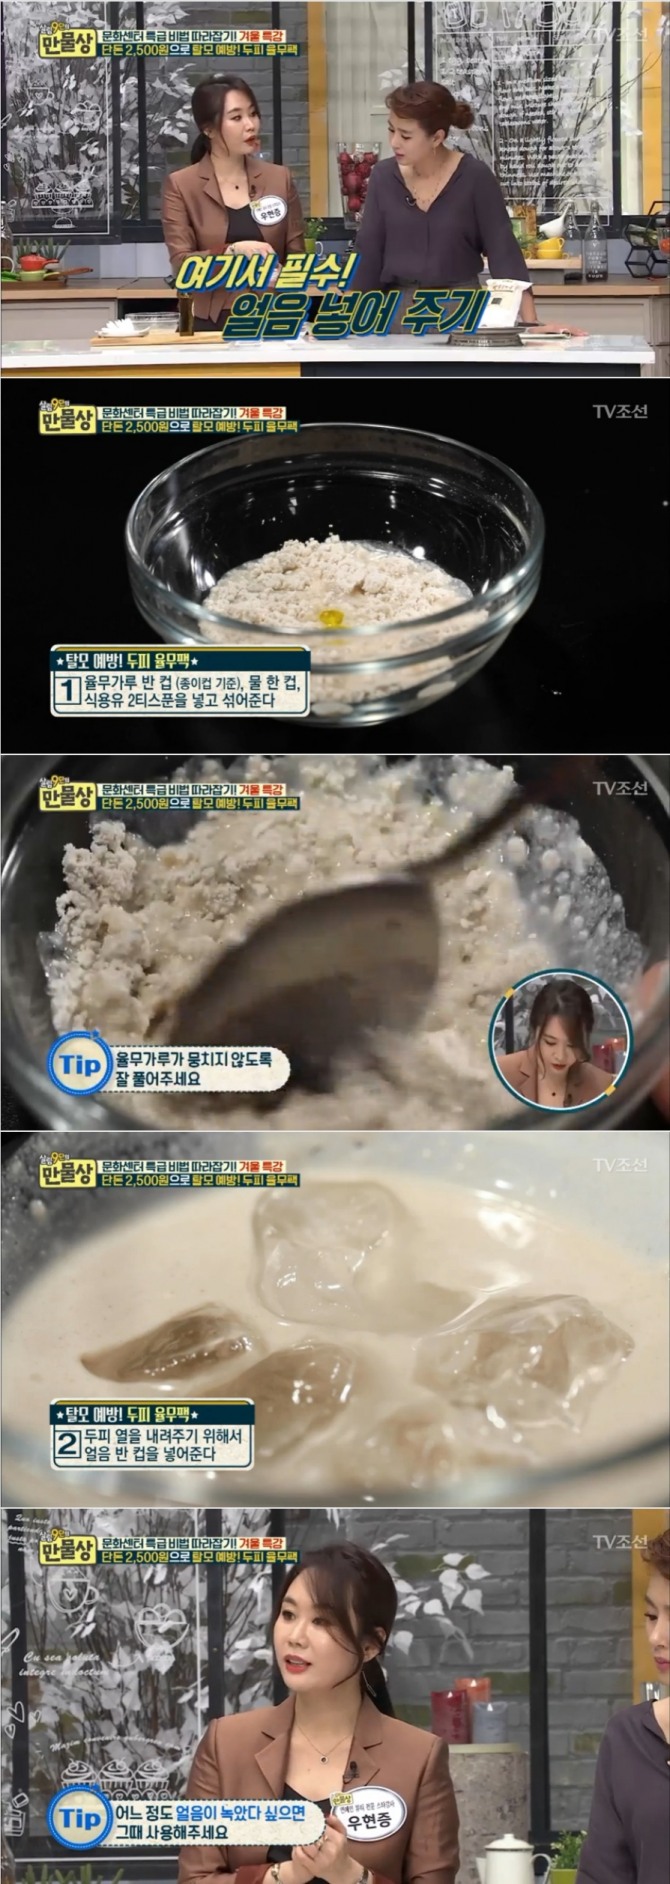 18일 밤 방송된 TV 조선 '살림9단의 만물상'에서는 우현증 뷰티 강사가 출연, 율무를 이용해 탈모 예방에 효과적인 '두피 헤어팩' 만드는 방법을 소개했다. 사진=TV조선 방송 캡처